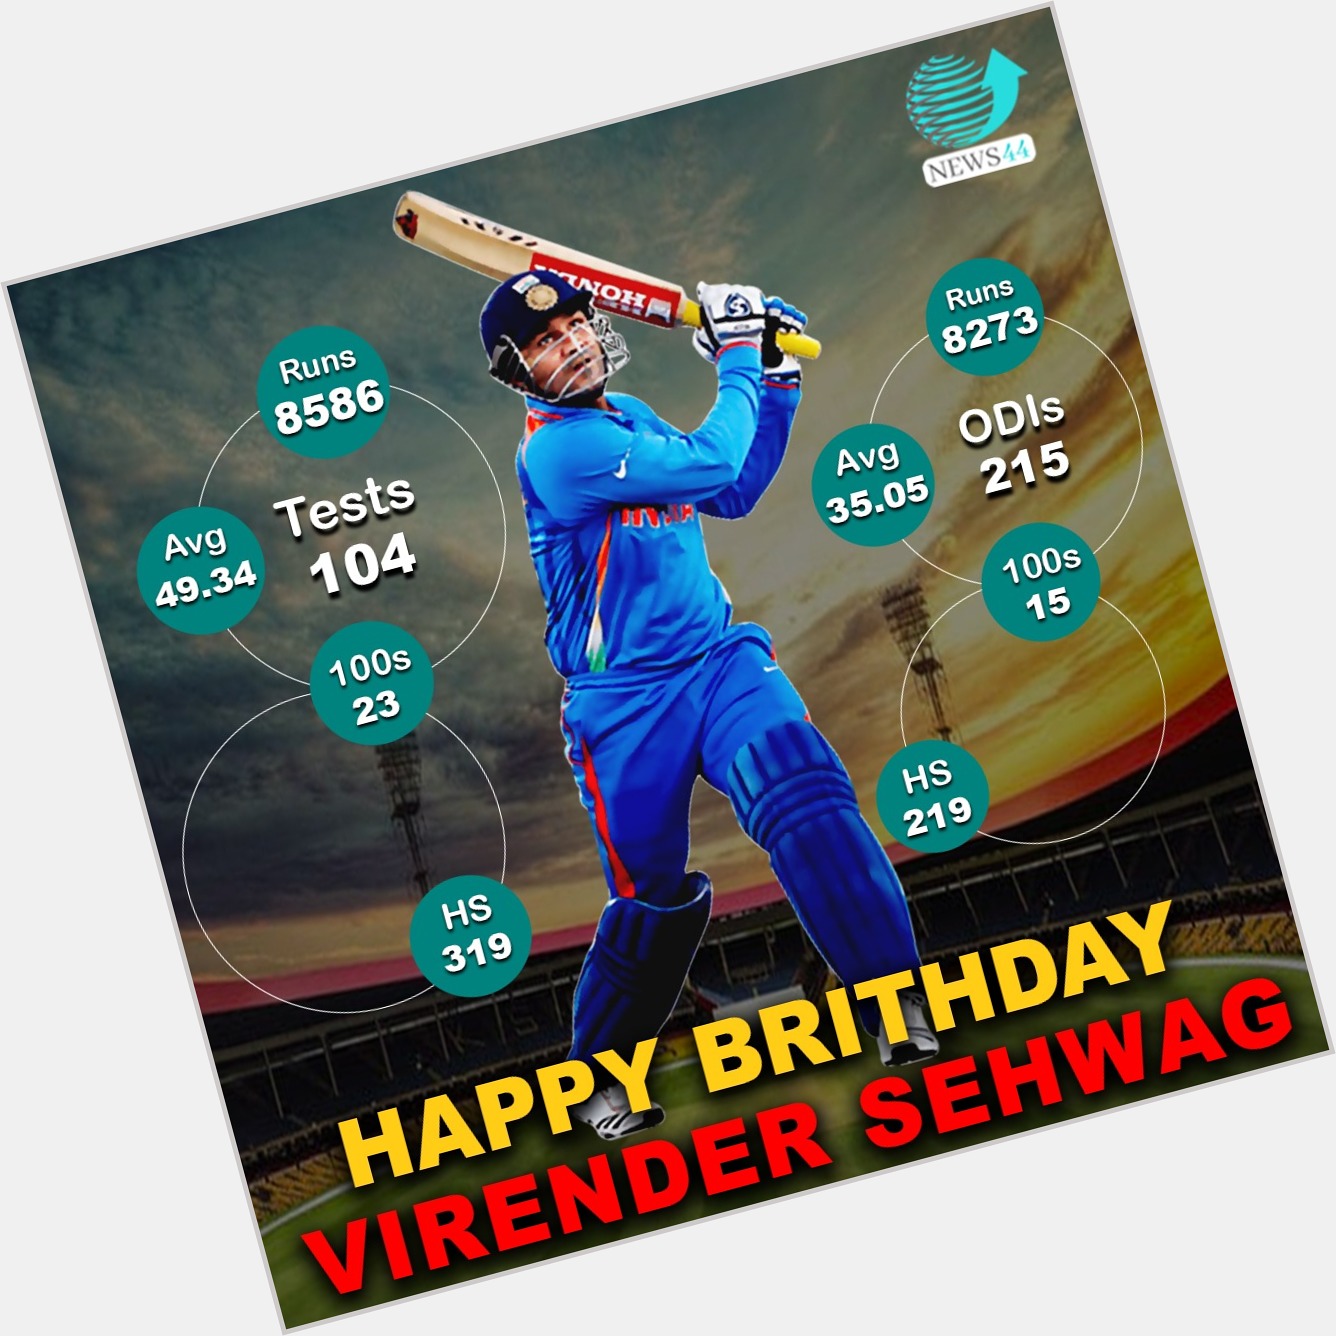 Happy Birthday Virender Sehwag | News44 